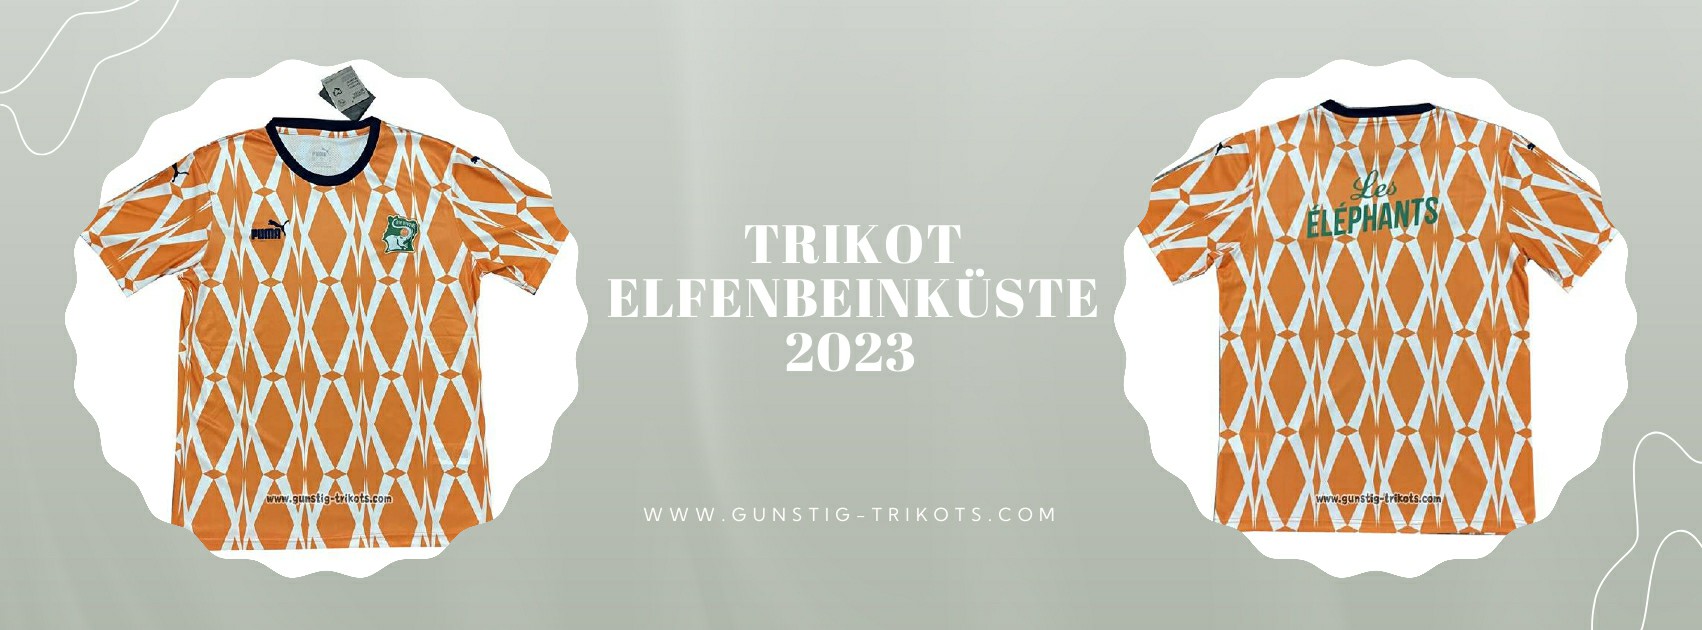 Elfenbeinküste Trikot 2023-2024